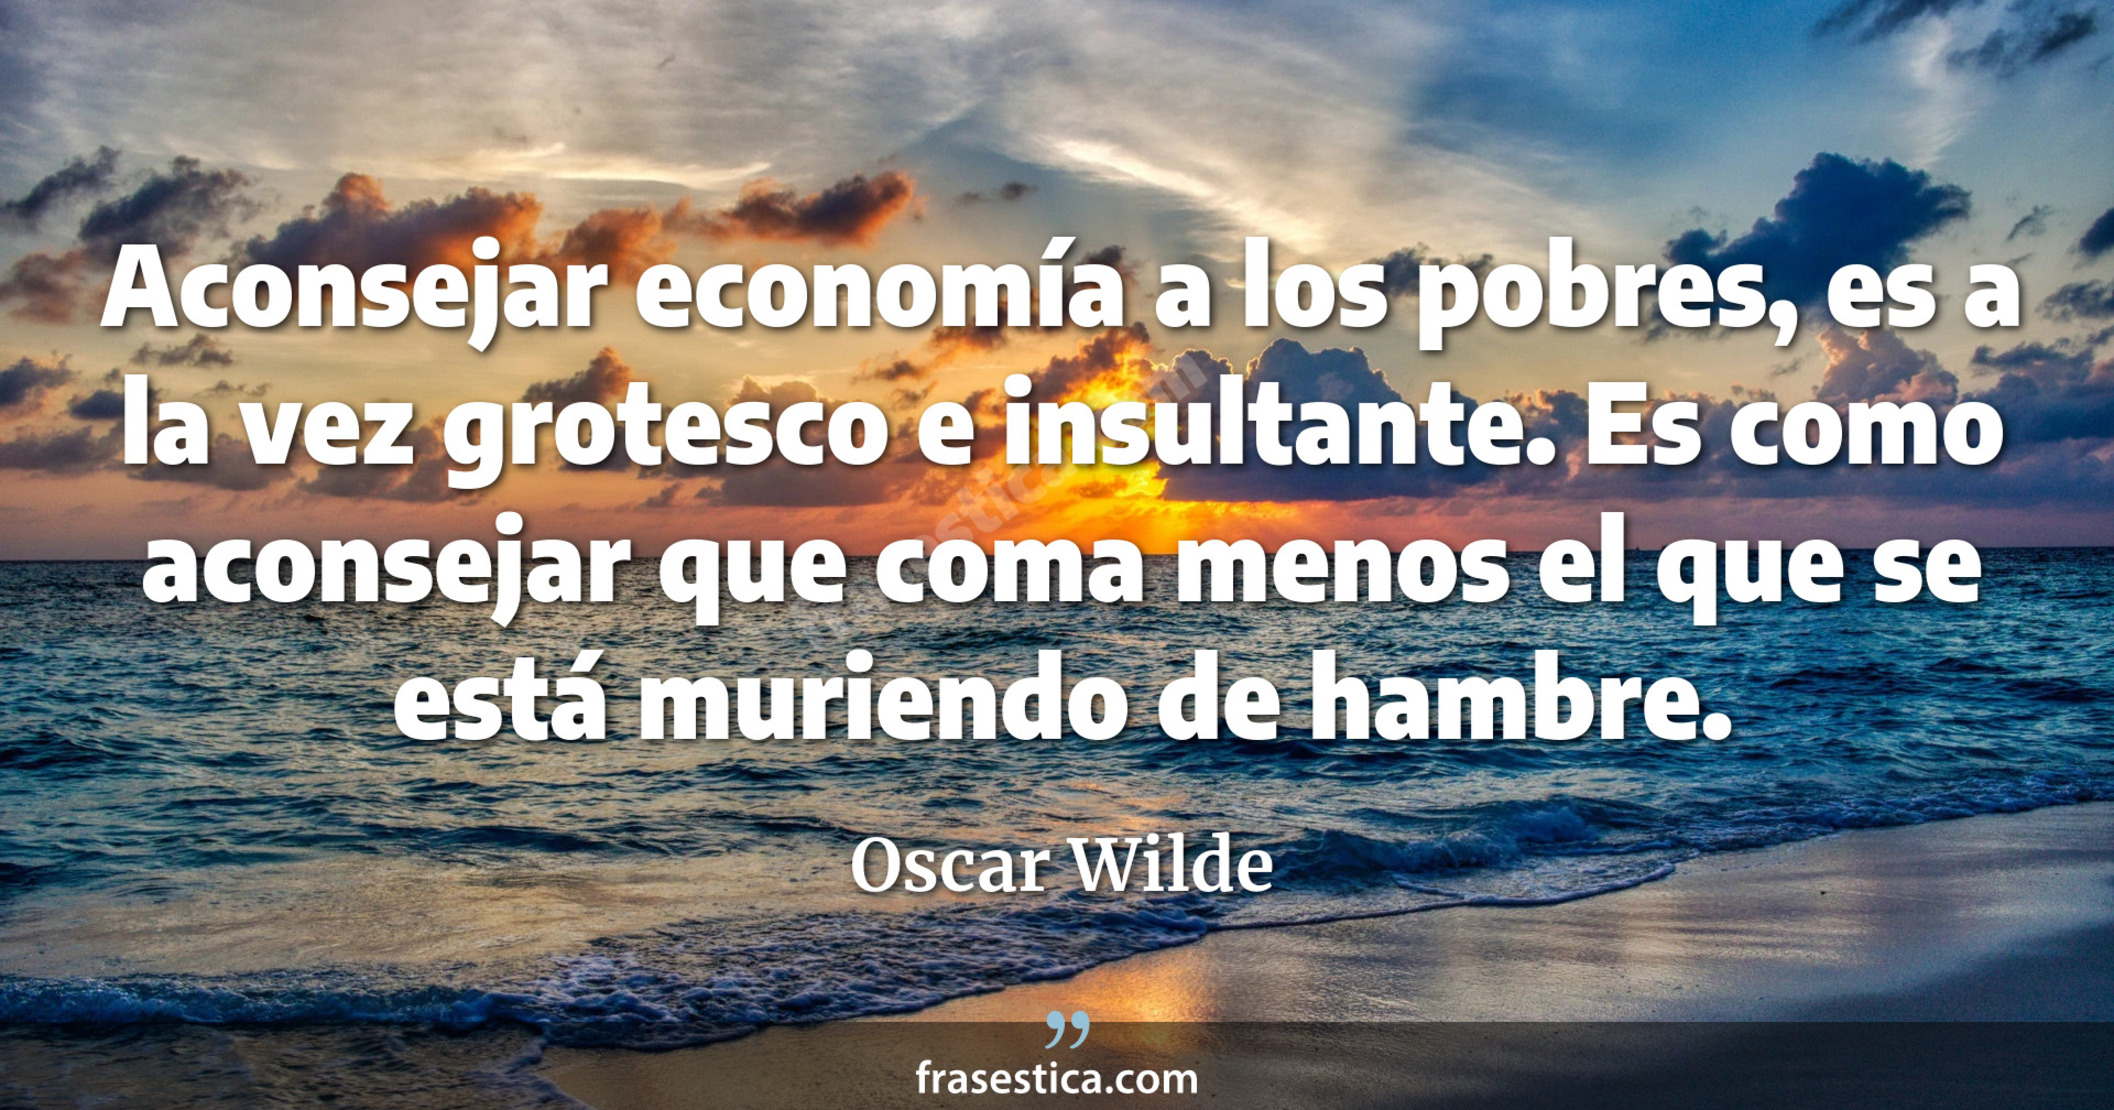 Aconsejar economía a los pobres, es a la vez grotesco e insultante. Es como aconsejar que coma menos el que se está muriendo de hambre. - Oscar Wilde